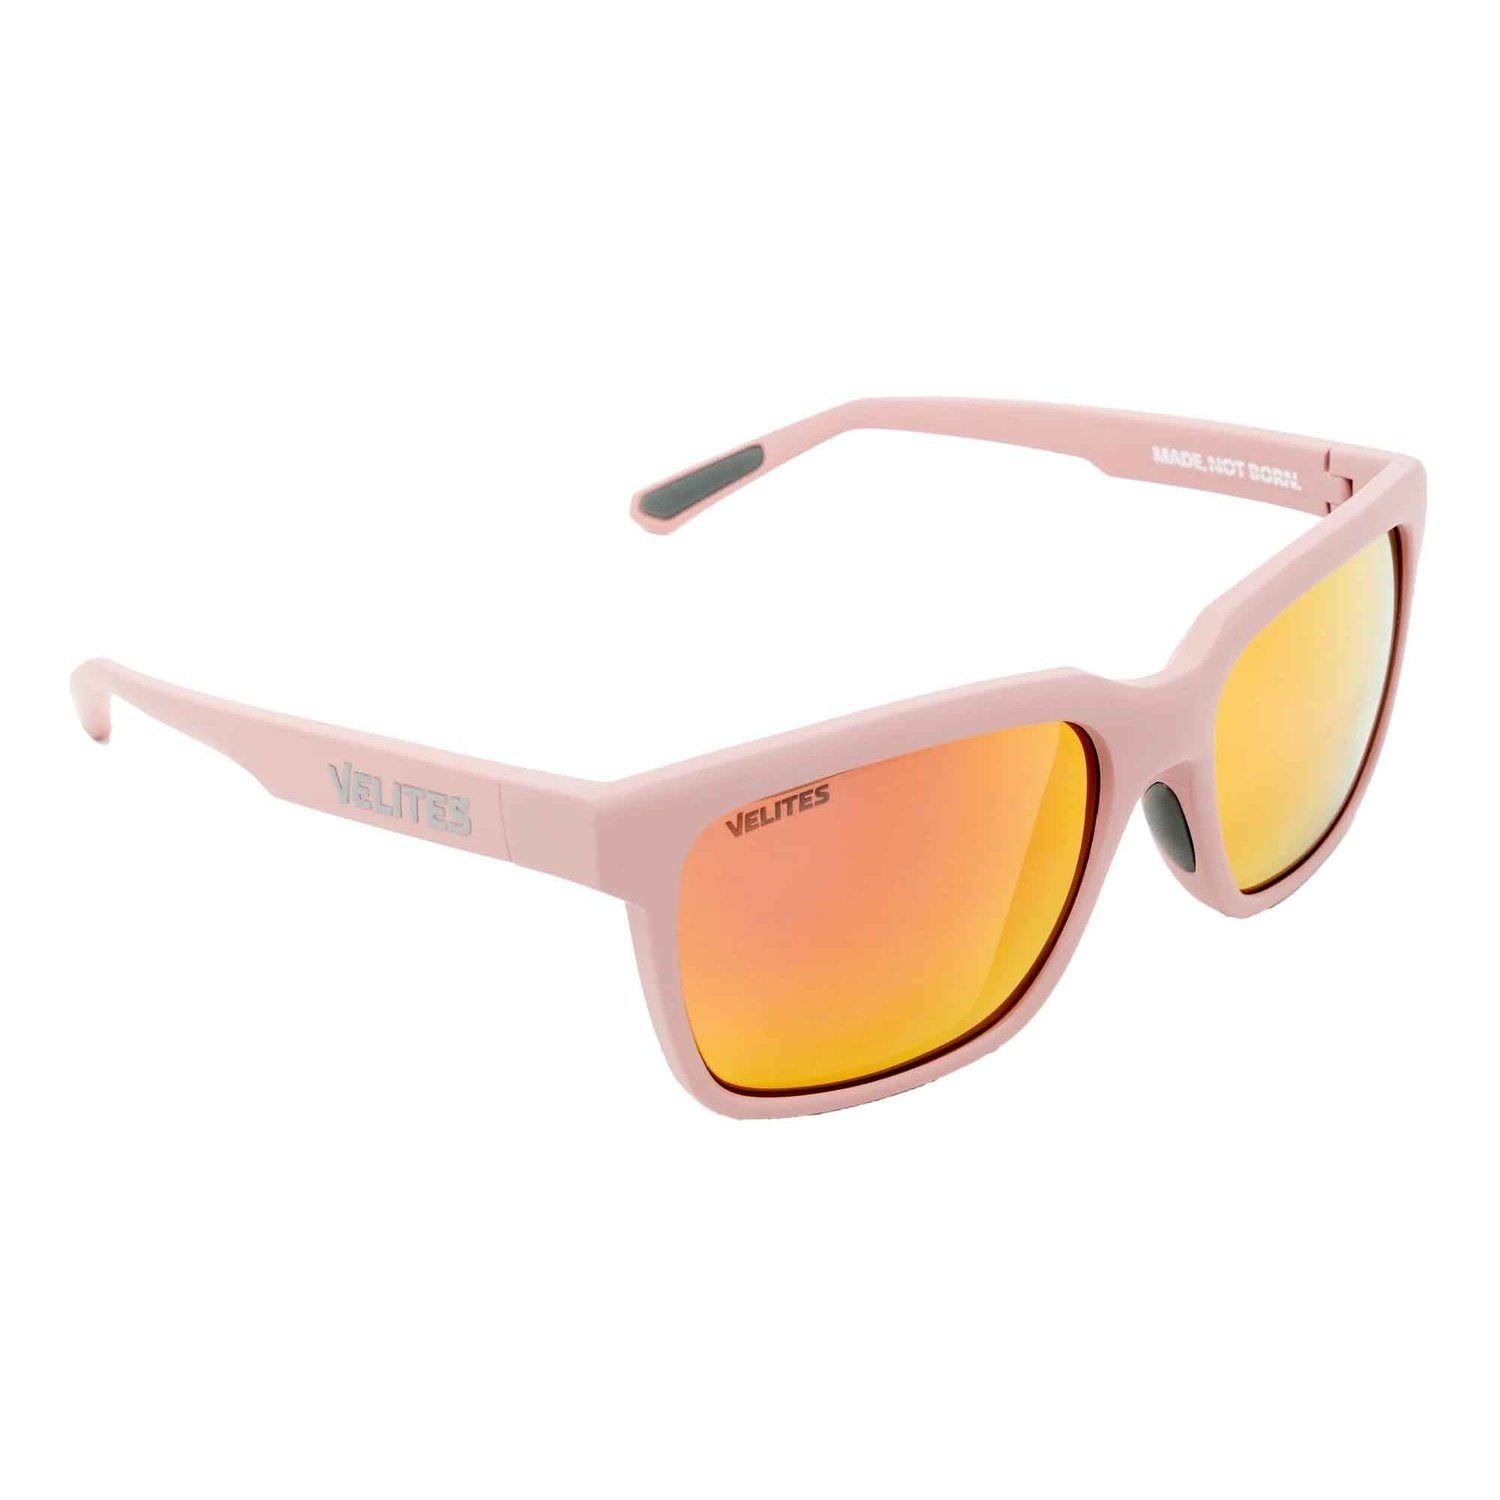 Velites Sonnenbrille "Urban Sport" Pink Rosegold kaufen bei HighPowered.ch